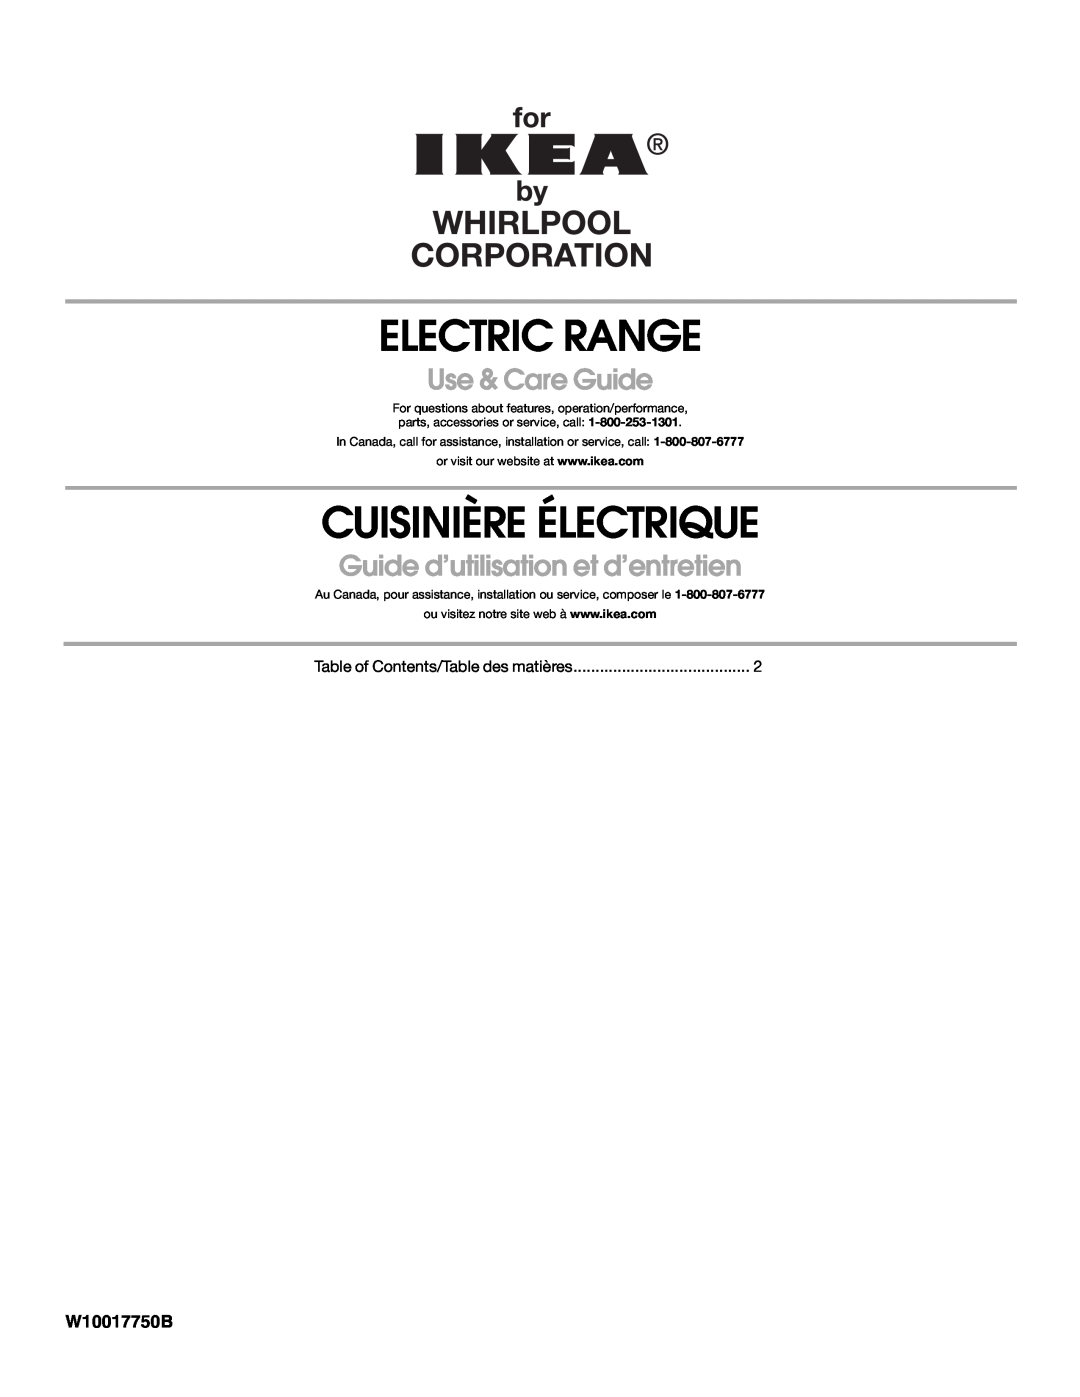 Whirlpool W10017750B2 manual Electric Range, Cuisinière Électrique, Use & Care Guide, Guide d’utilisation et d’entretien 